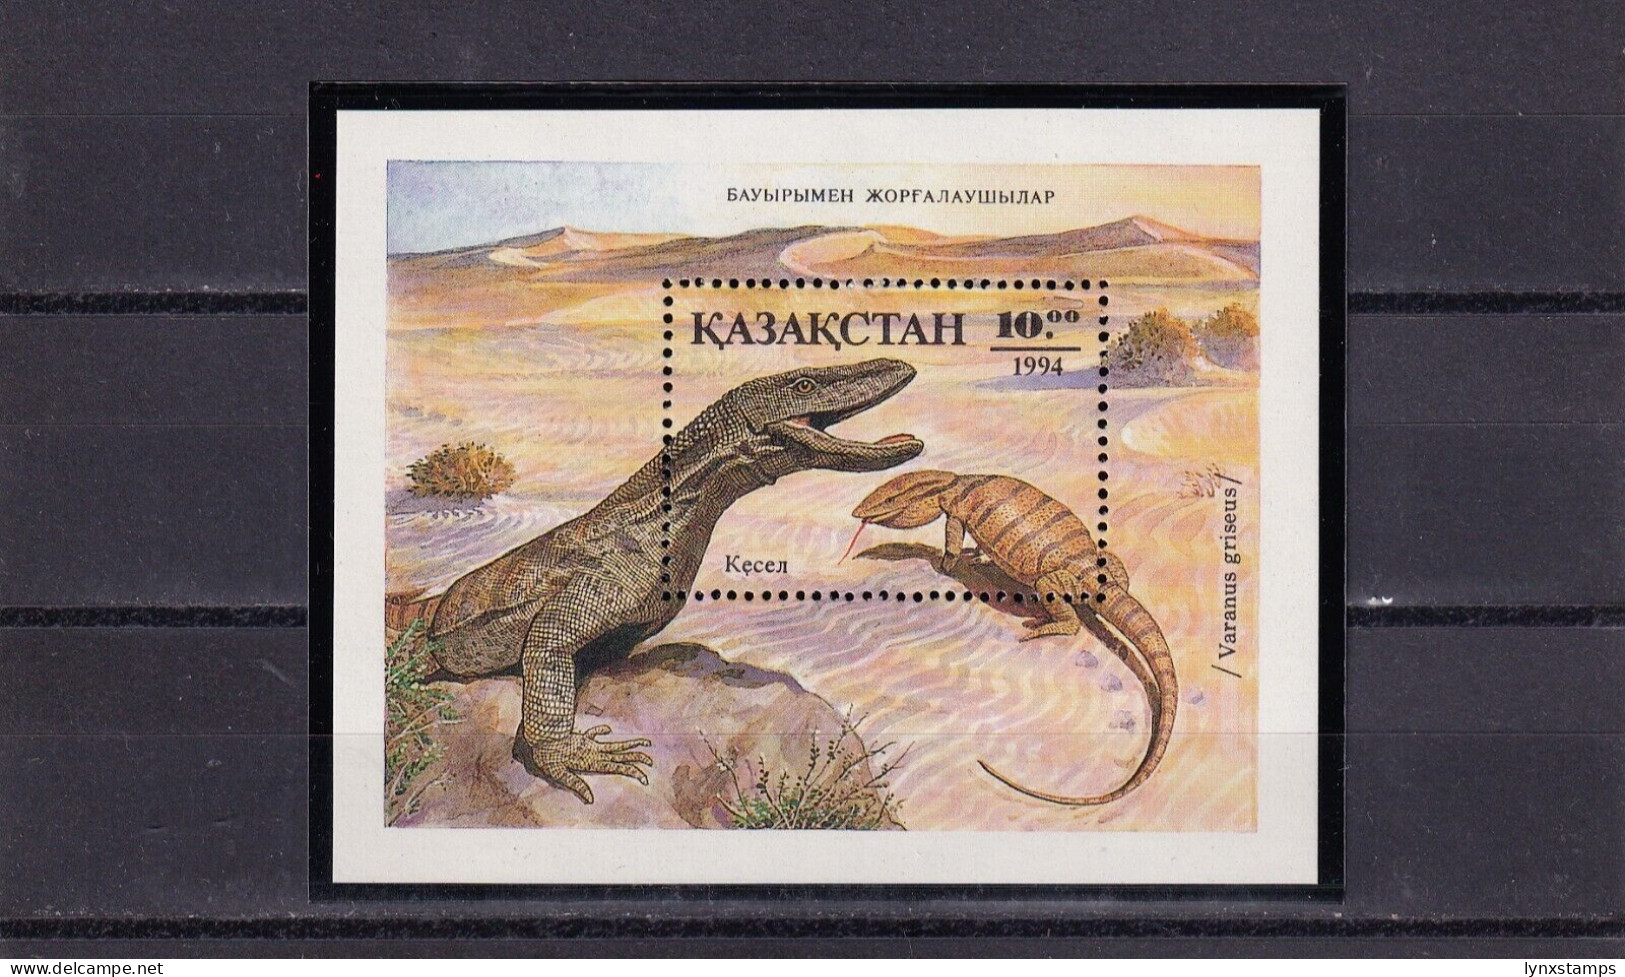 SA01 Kazakhstan 1994 Reptiles Mini Sheet Mint Stamp - Kasachstan